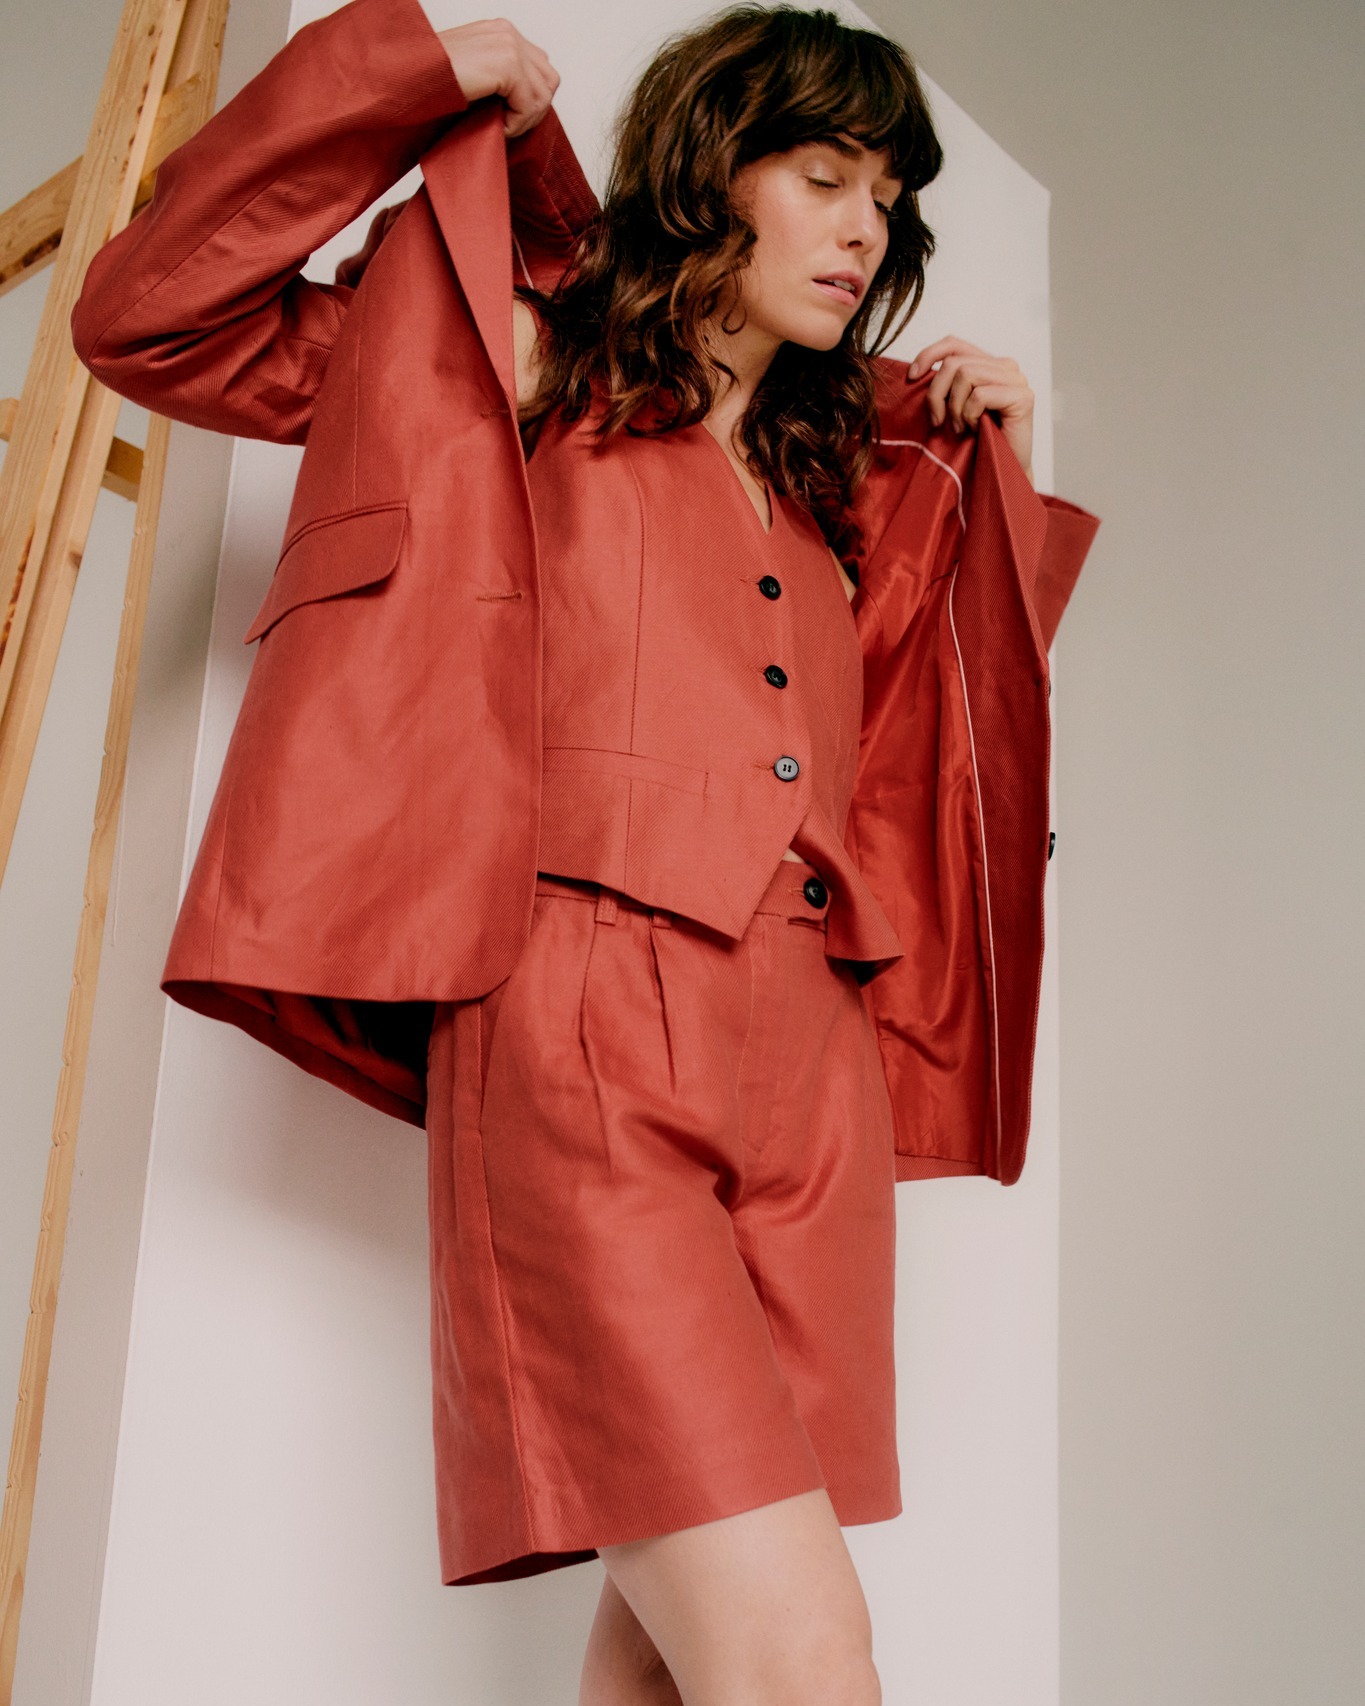 modelo femenina con traje rojo